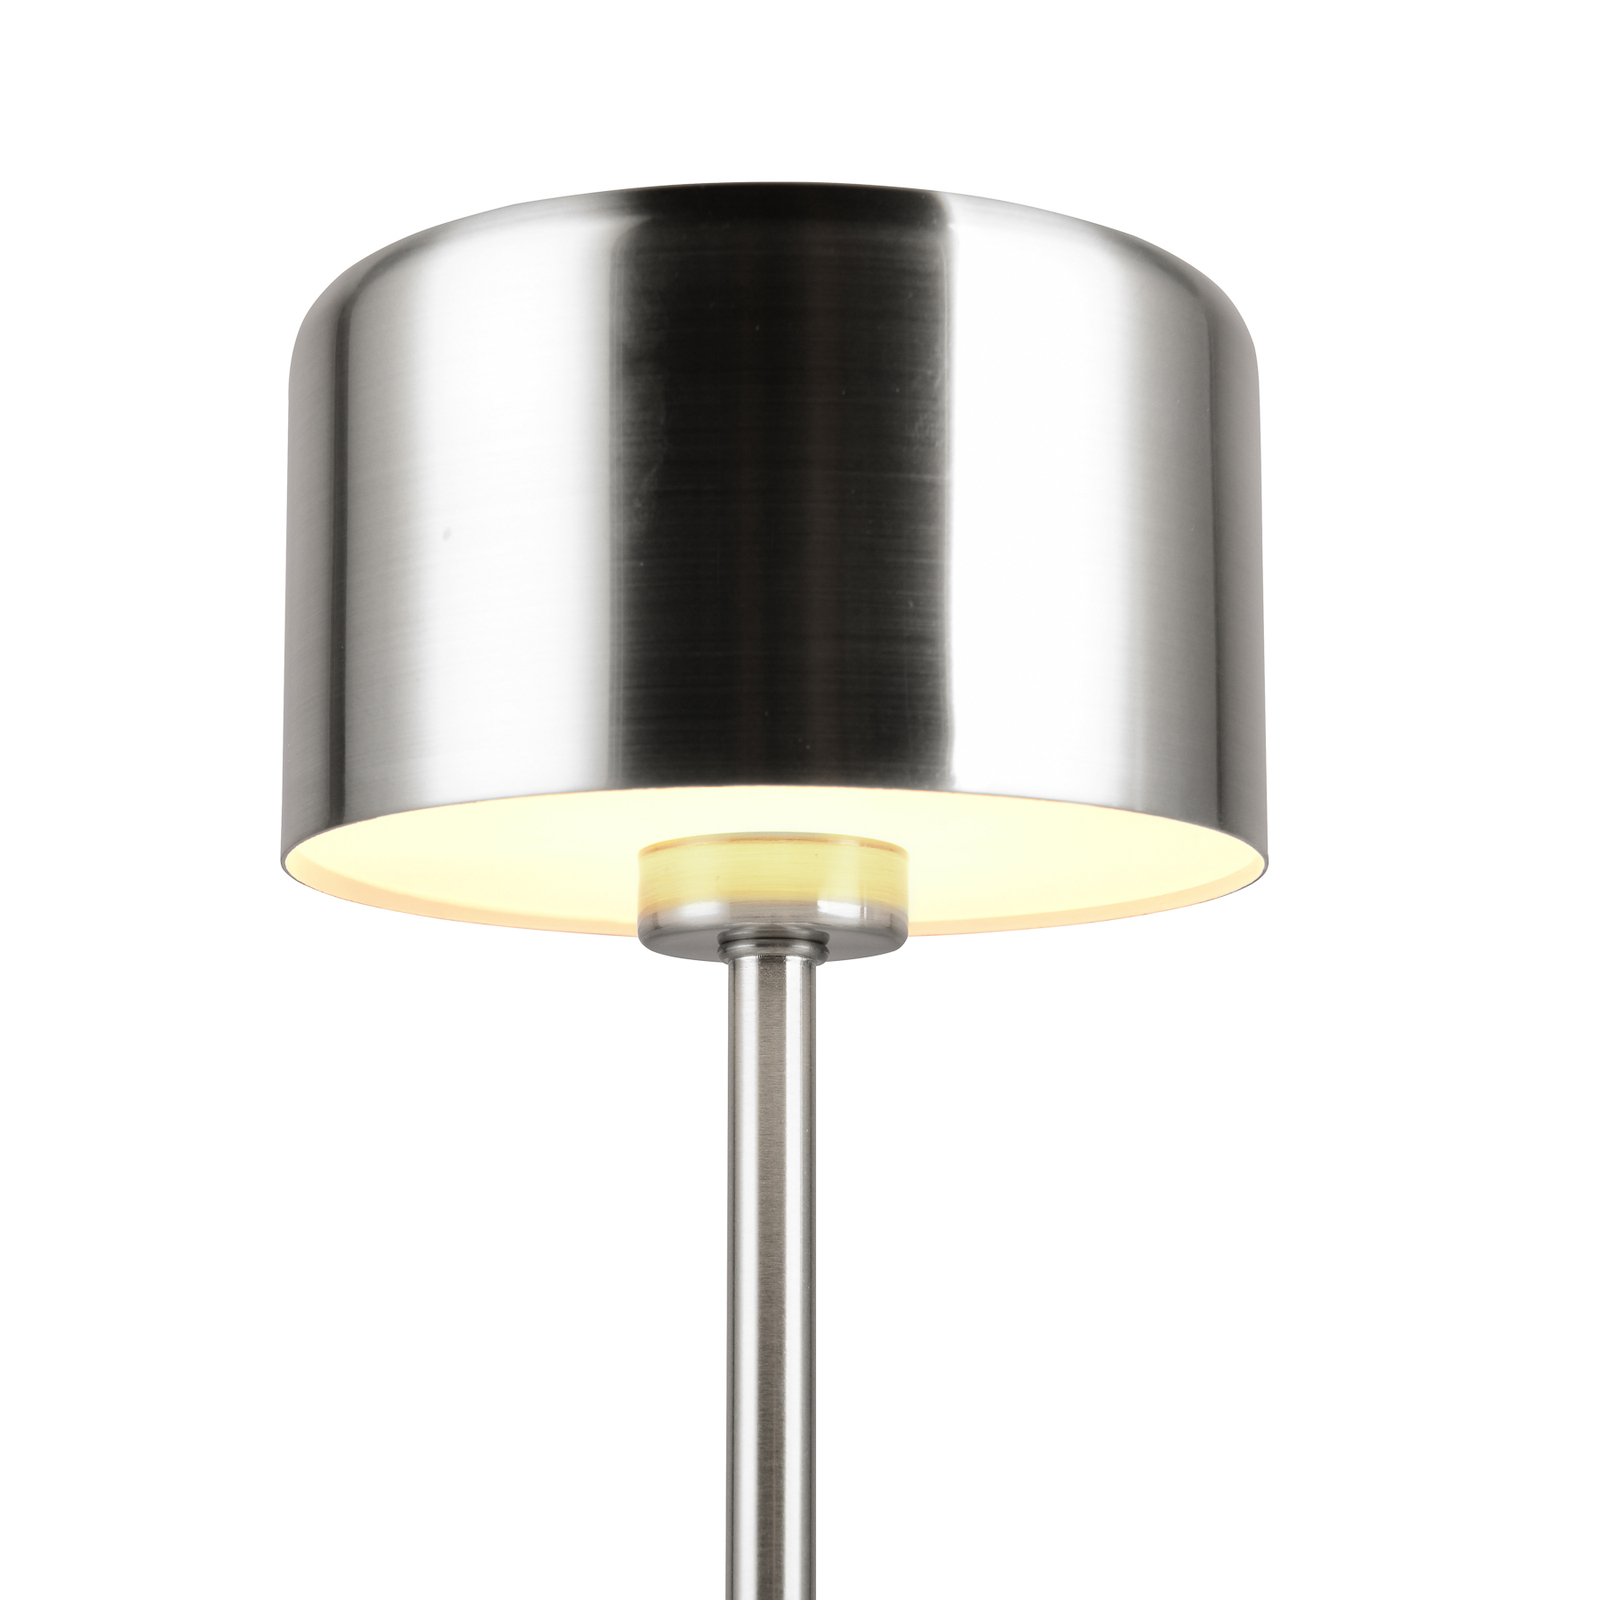 Jeff LED oppladbar bordlampe, nikkelfarget, høyde 30 cm, metall